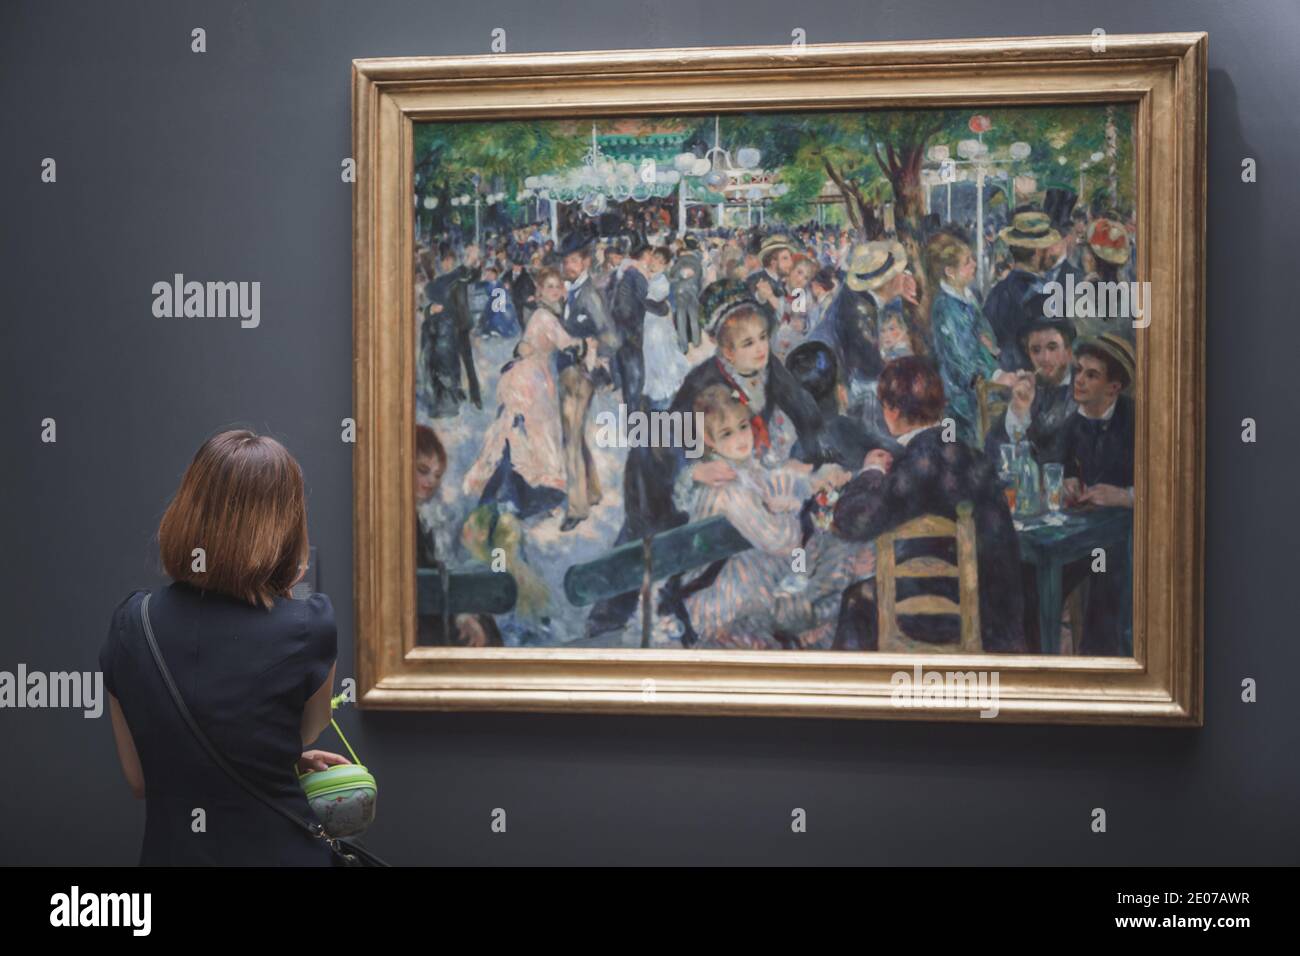 Parigi, Francia - 22 agosto 2015: Un visitatore del Musee d'Orsay che guarda il famoso capolavoro di Renoir "Bal du moulin de la Galette" Foto Stock